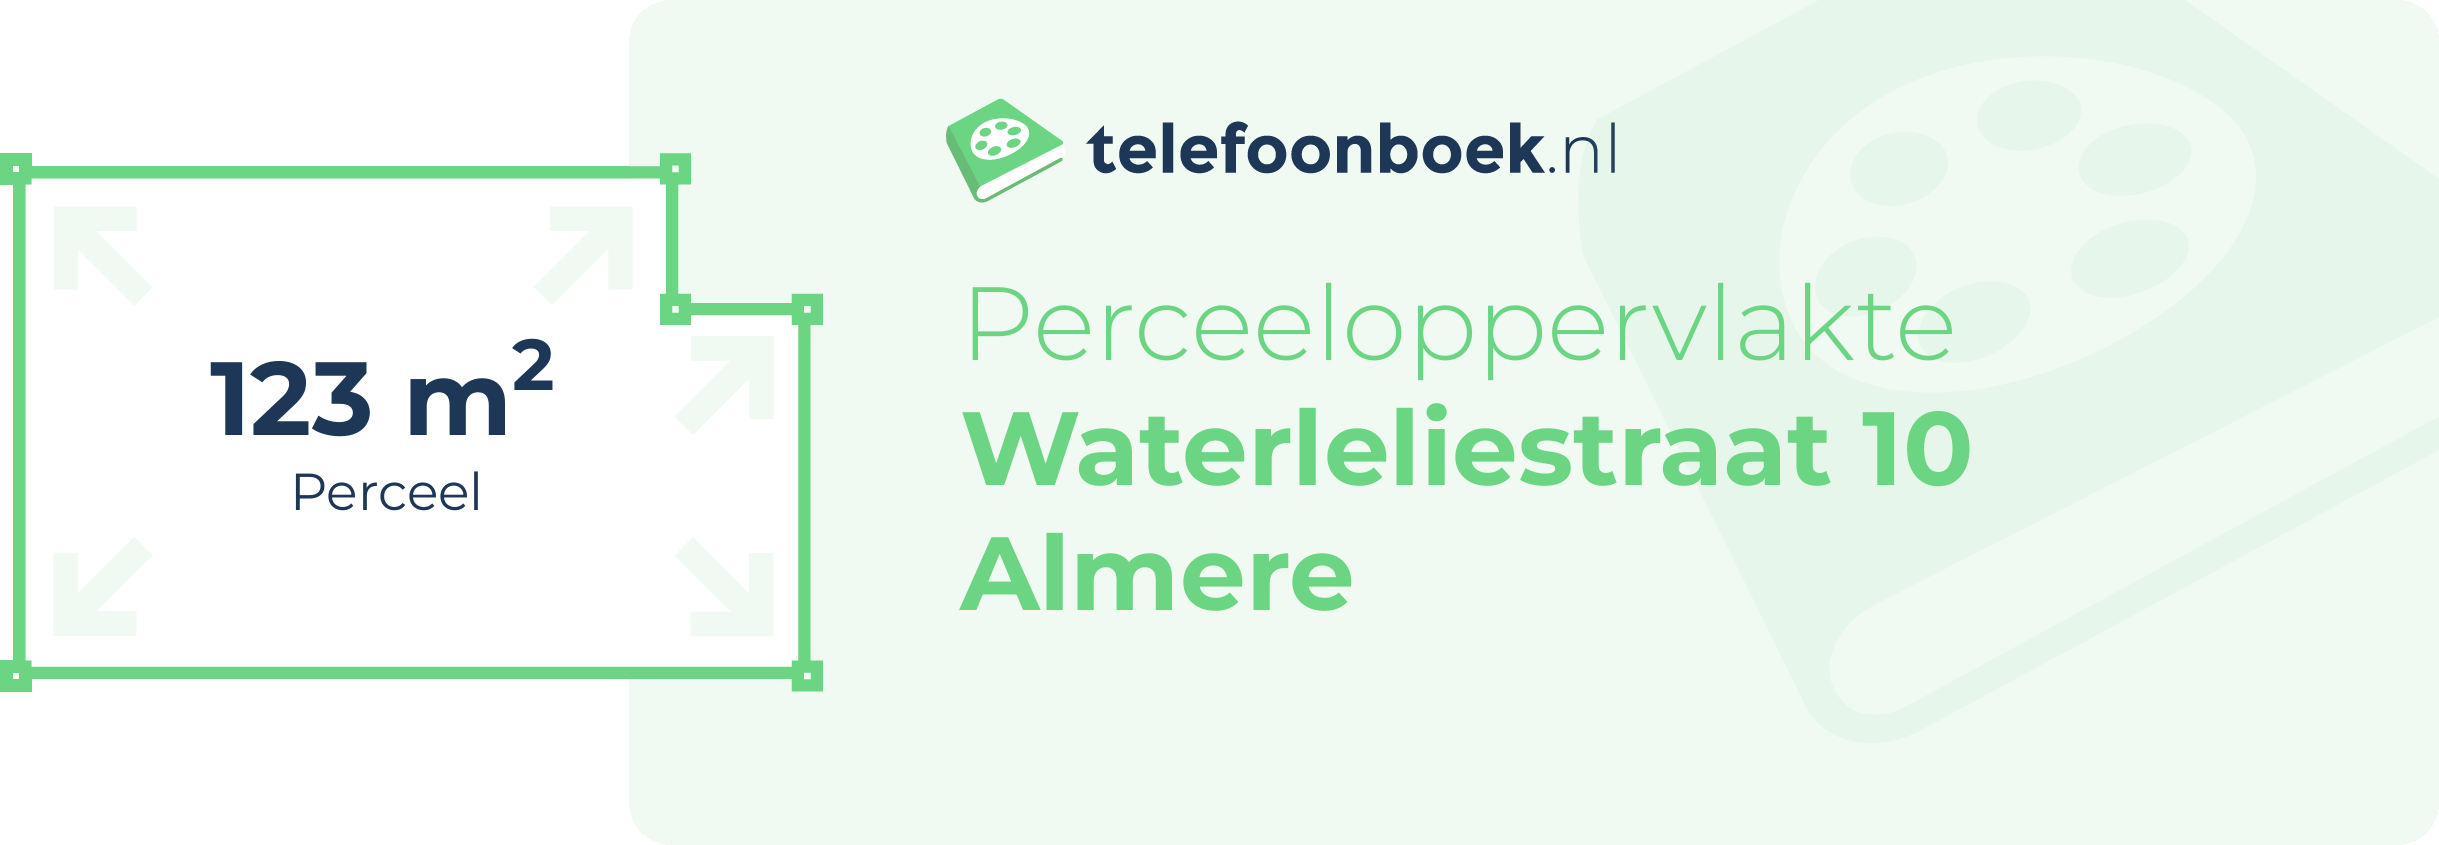 Perceeloppervlakte Waterleliestraat 10 Almere